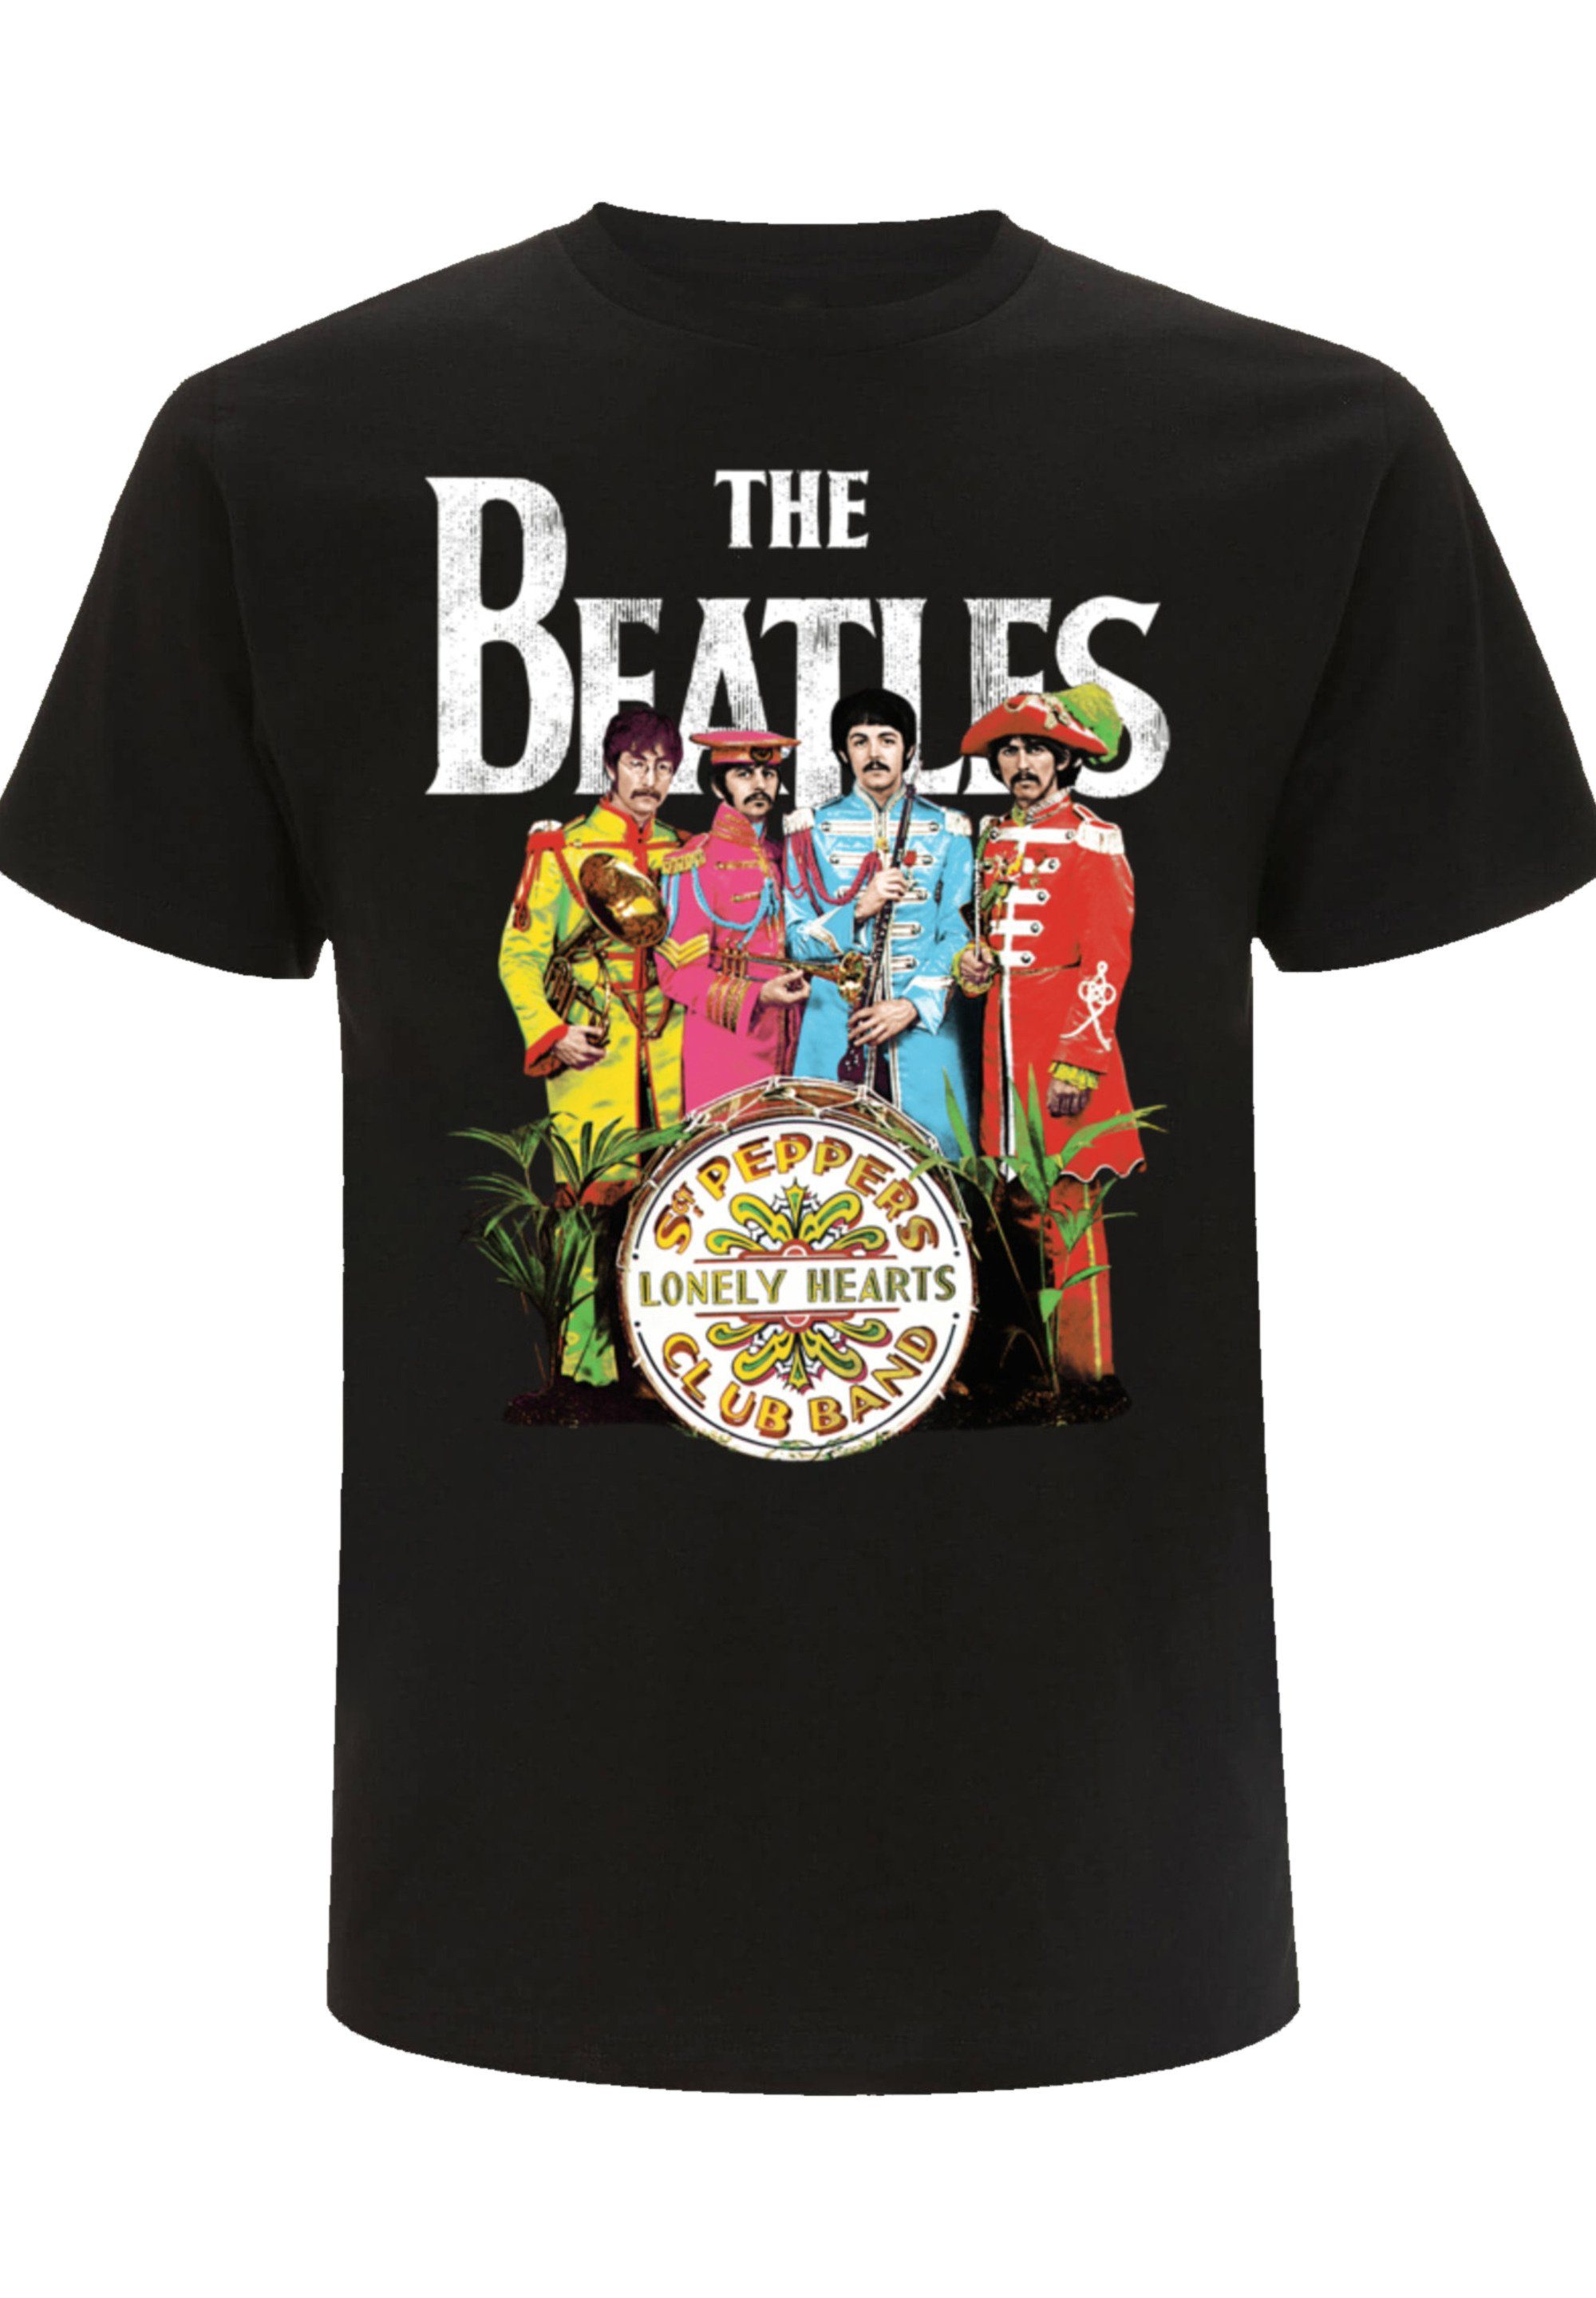 Pepper fairen hergestellt F4NT4STIC Print, Beatles Unter T-Shirt Sgt Arbeitsbedingungen The